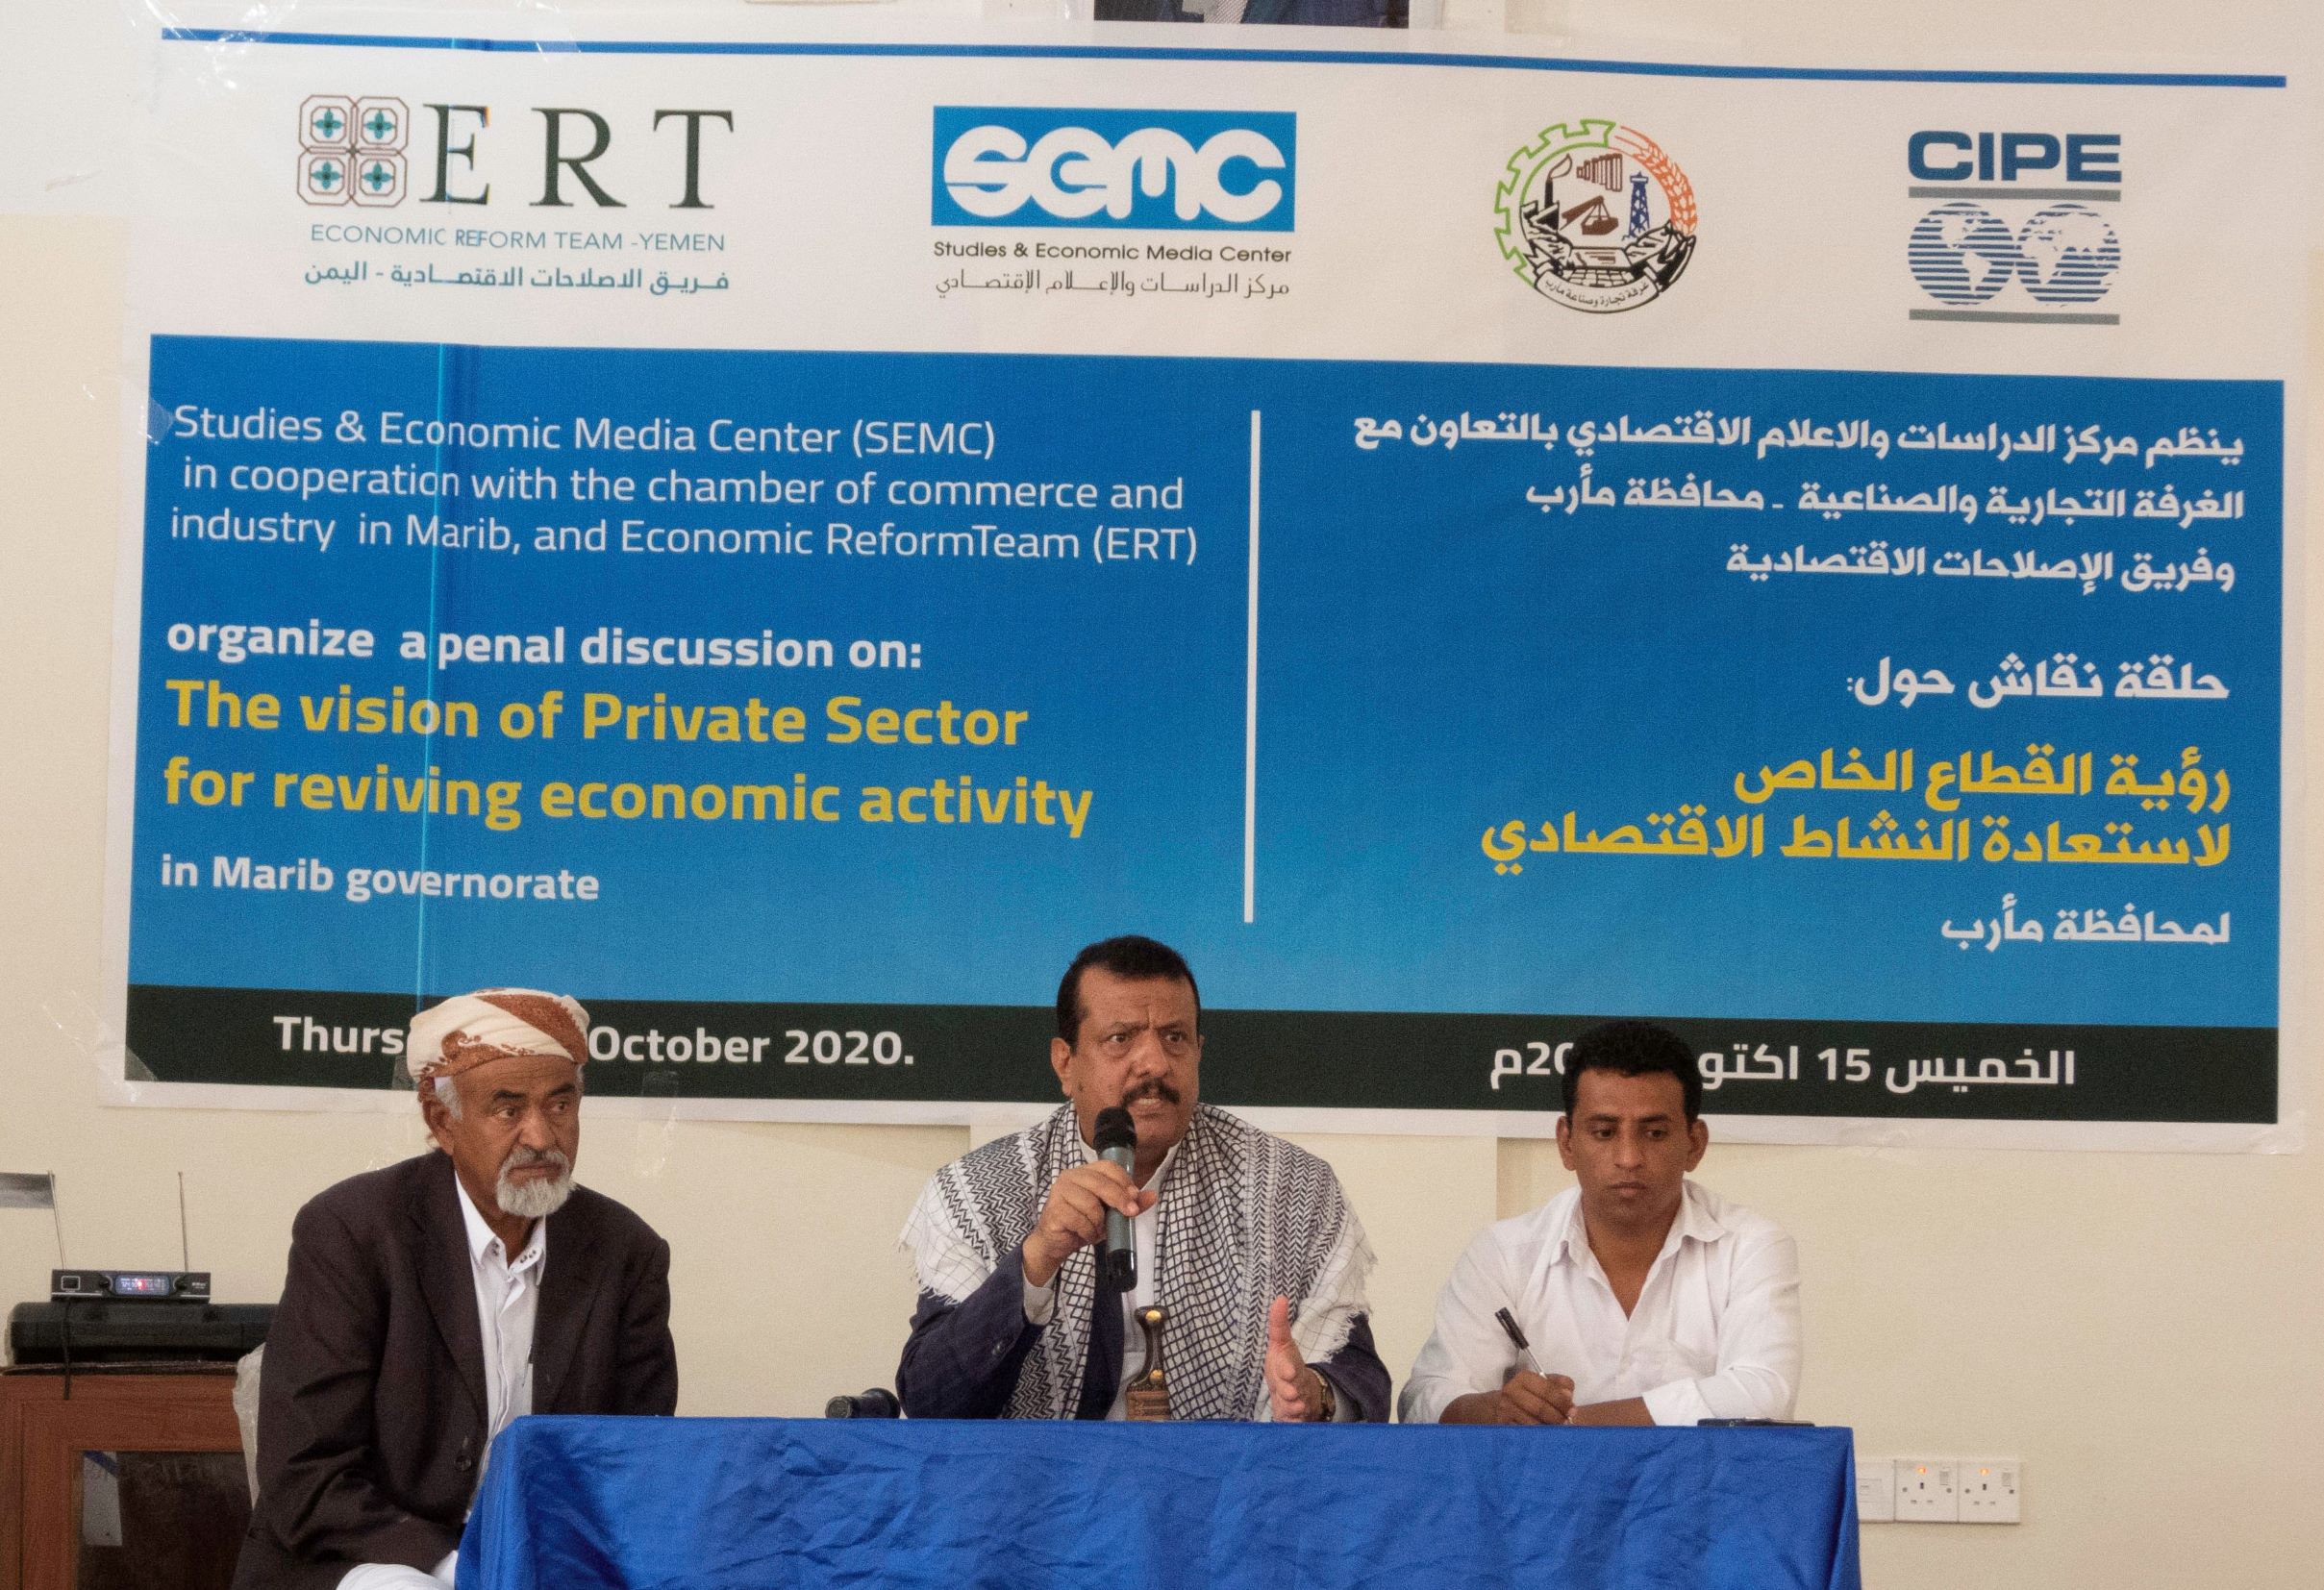 الامن والاستقرار على رأس الاولويات .. حراك محلي لاستعادة النشاط الاقتصادي في المحافظات اليمنية